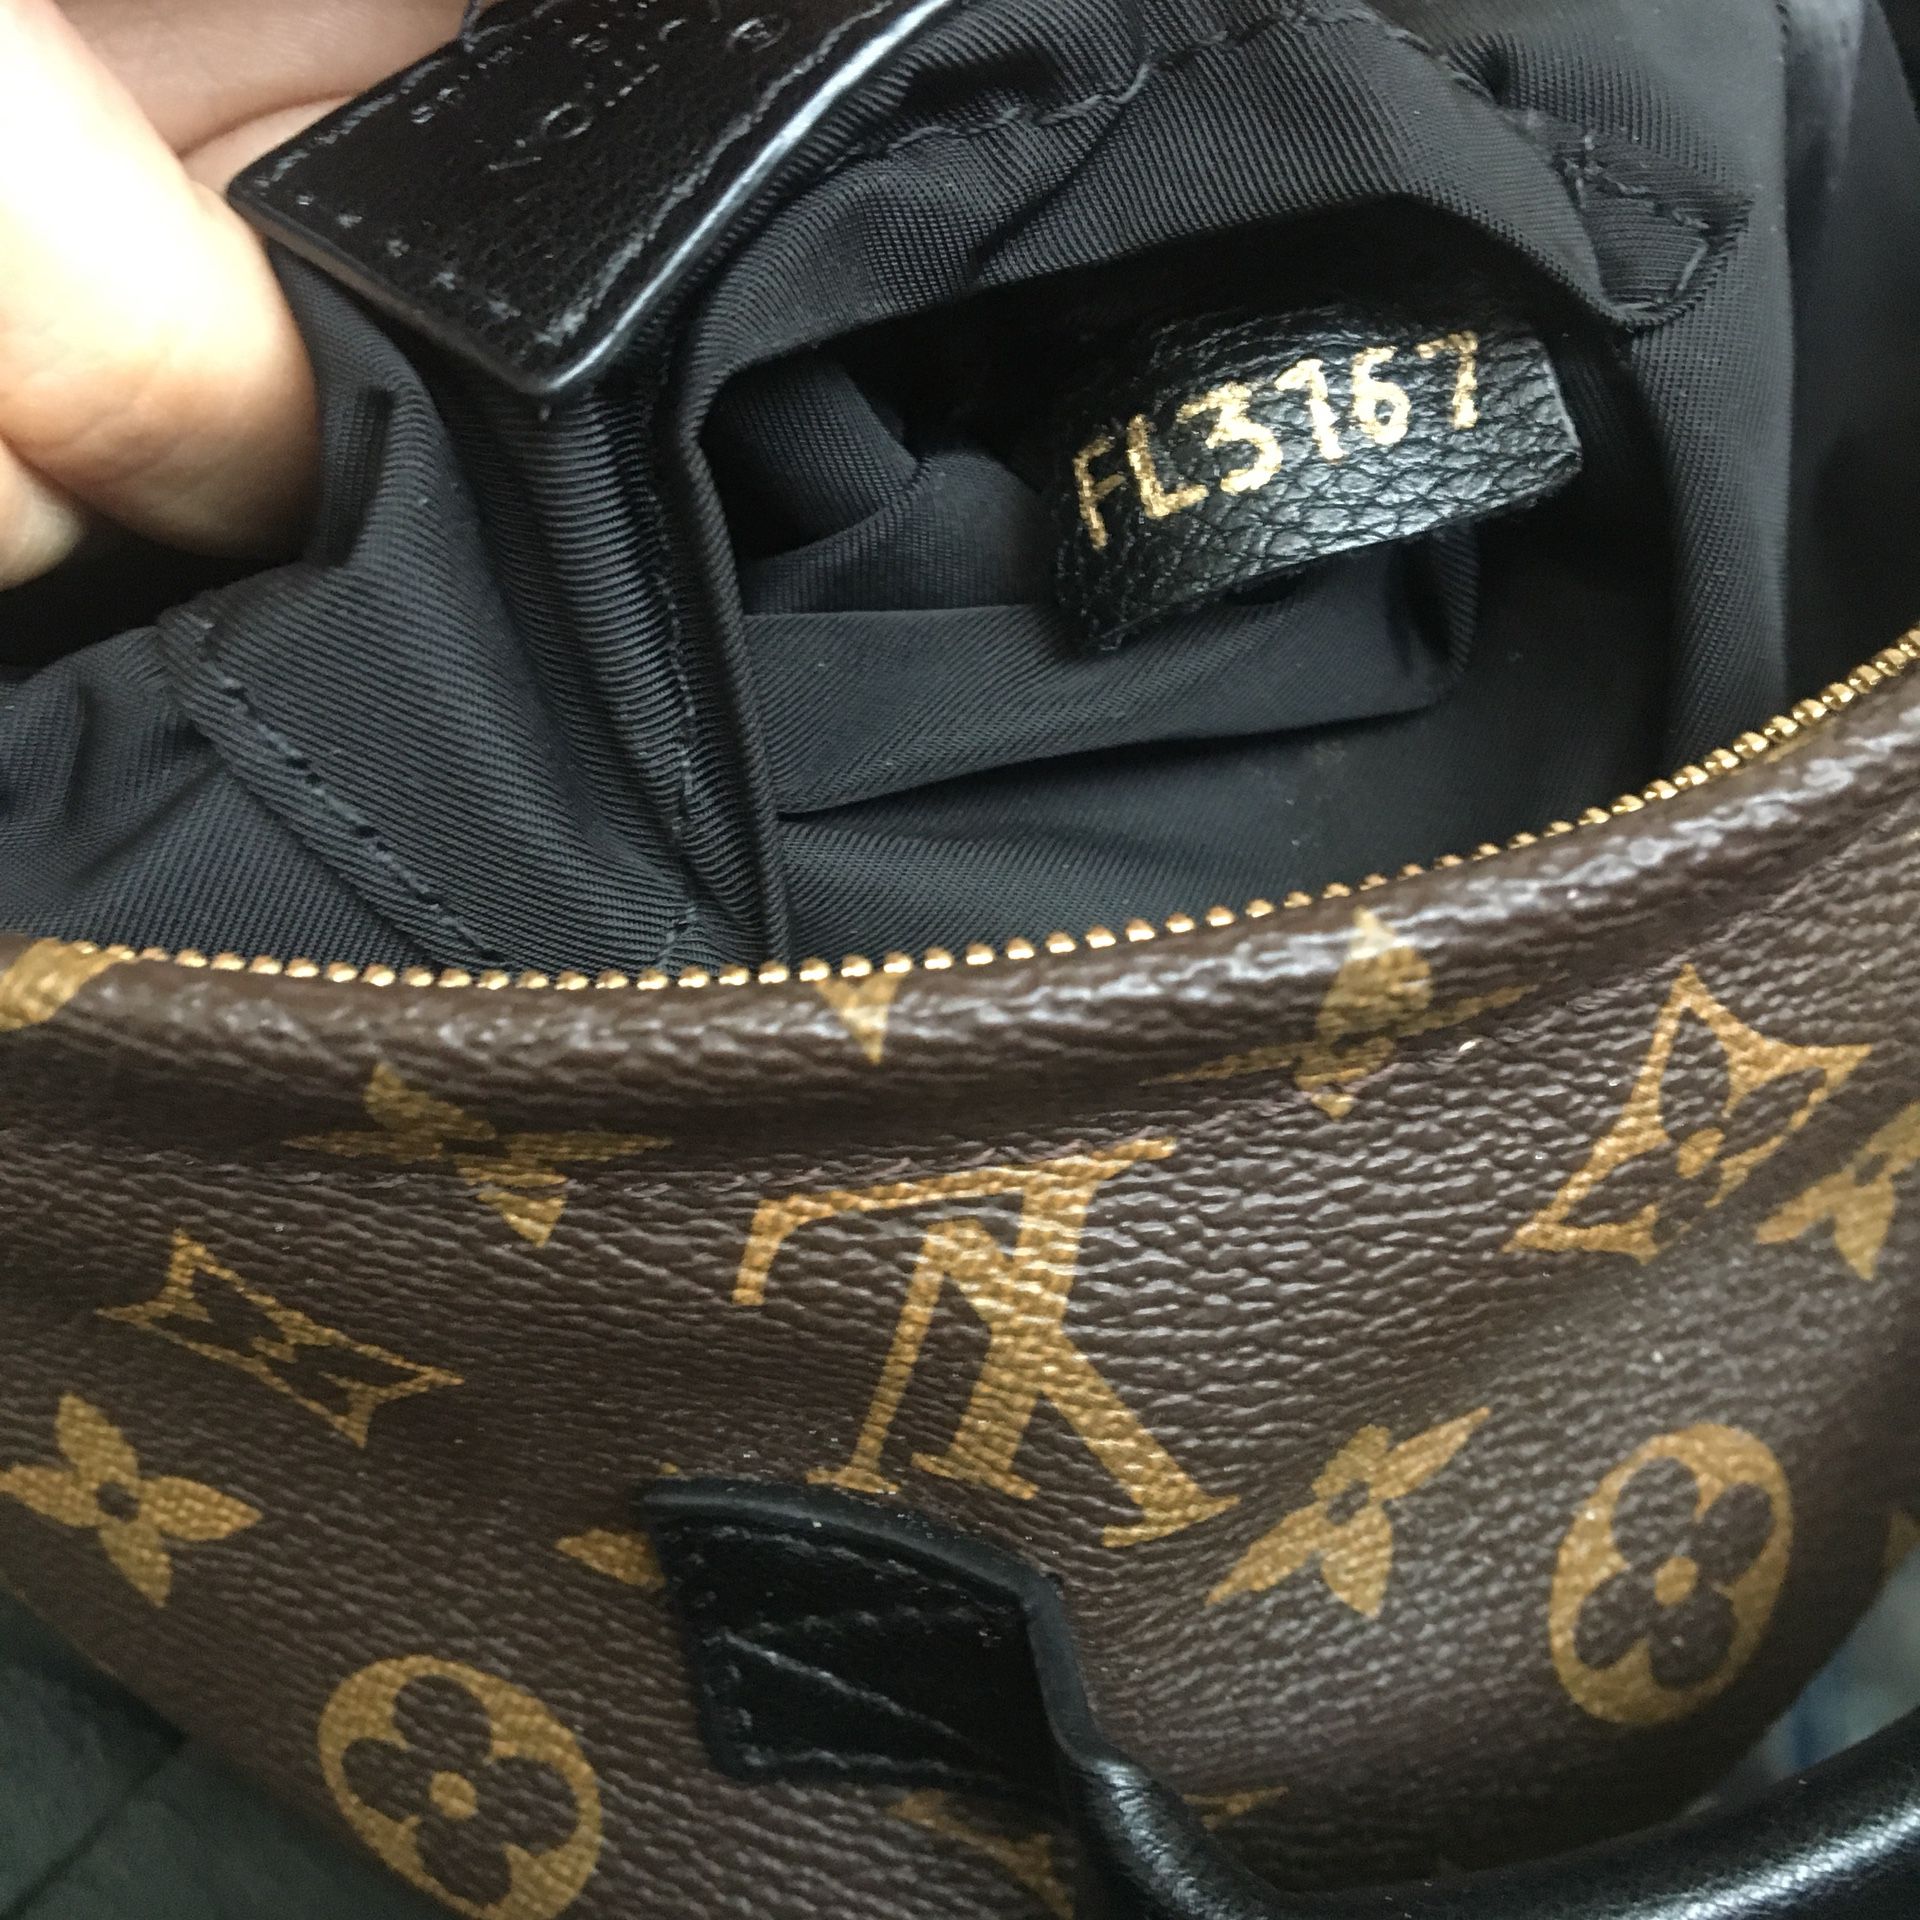 Louis Vuitton Backpack for Sale in Kearny, NJ - OfferUp